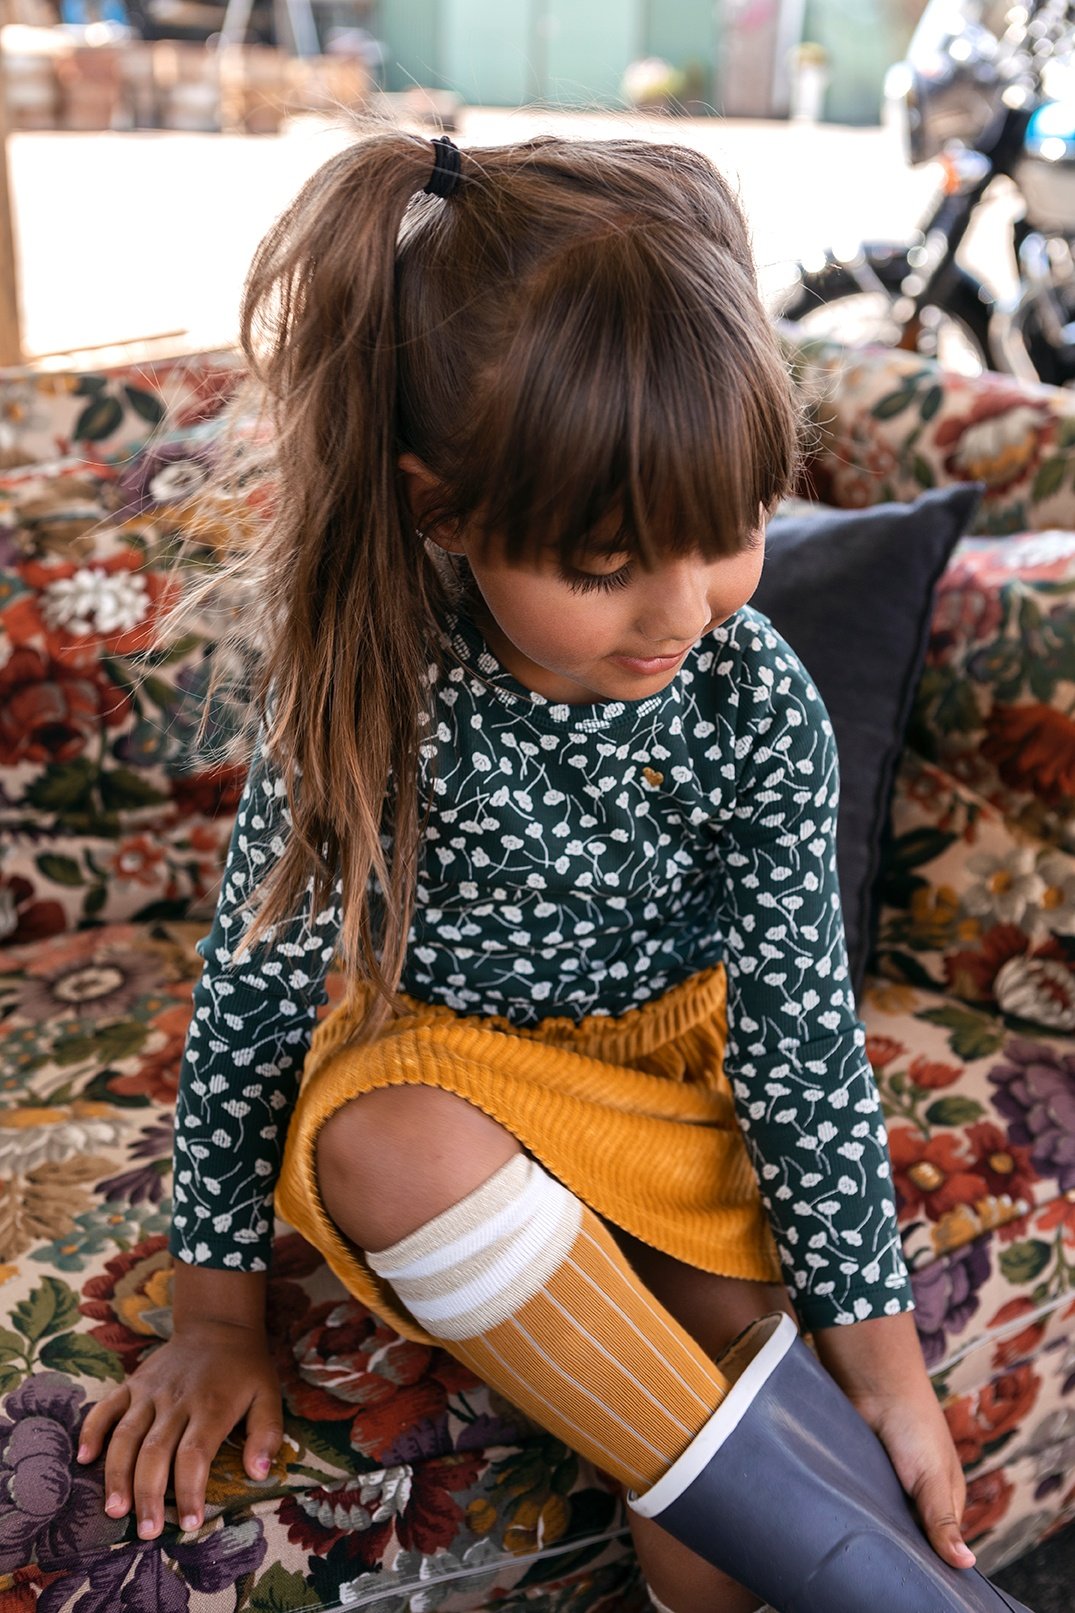 Meisjes Little velvet skirt van Looxs Little in de kleur Honey in maat 128.